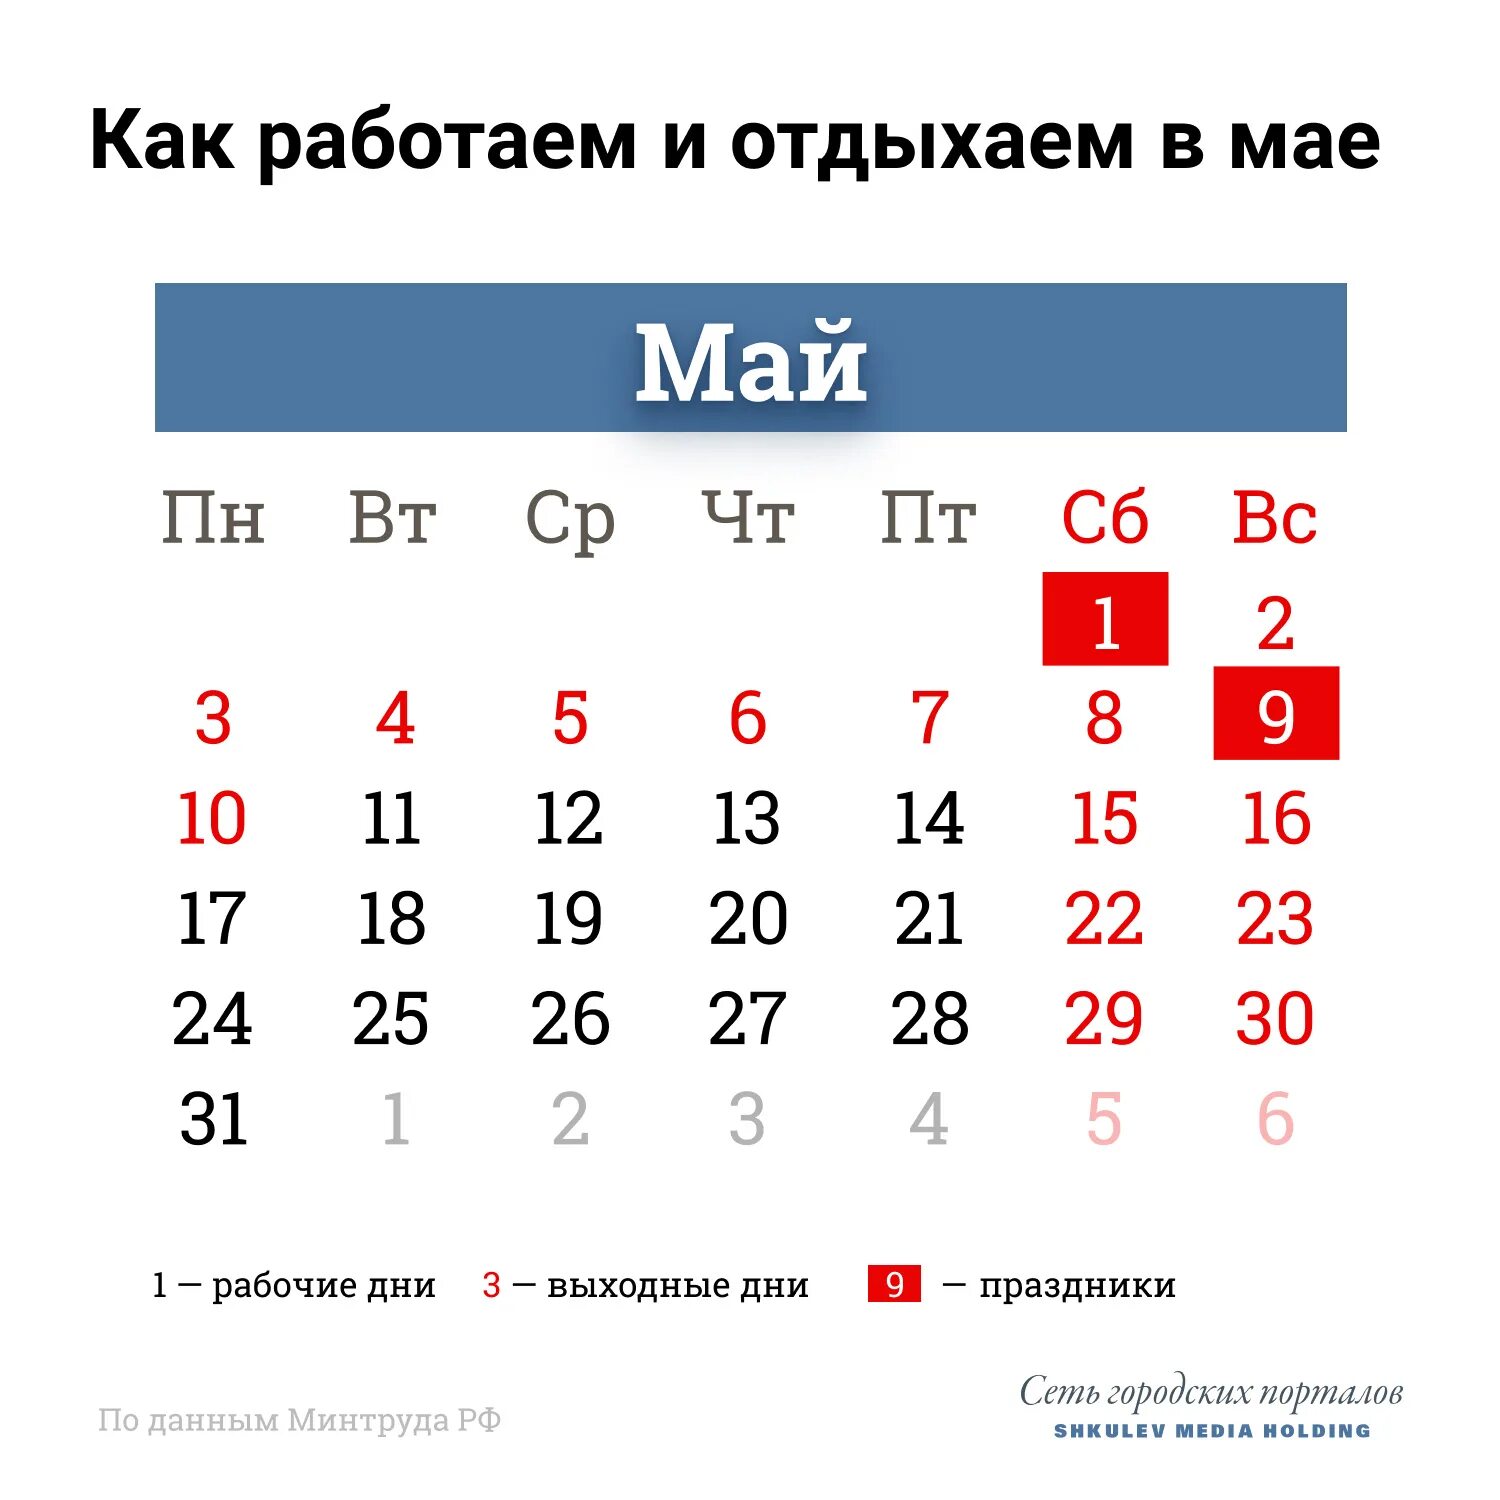 Праздничные дни в мае 2021 года в России. Выходные в мае. Майсеип праздник календарь. Майские праздники rfktylfh,.